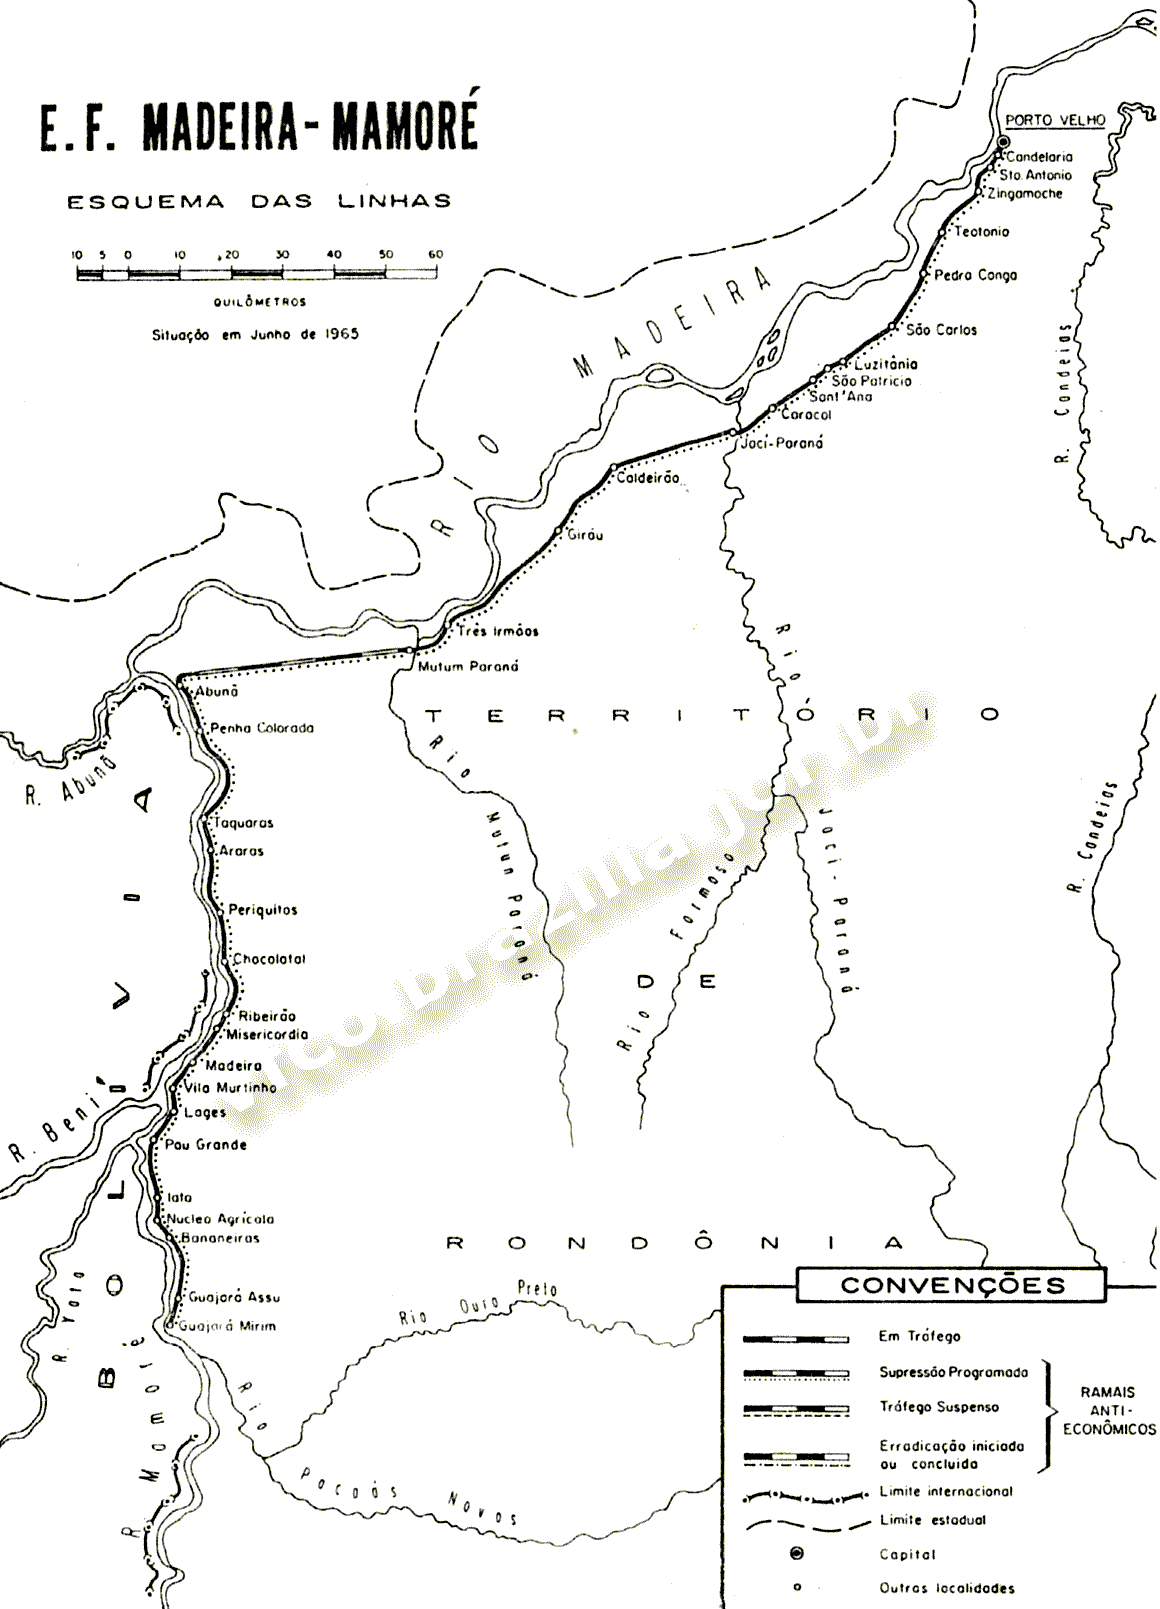 Mapa dos trilhos da Estrada de Ferro Madeira-Mamoré, da Rede Ferroviária Federal - RFFSA, em 1965